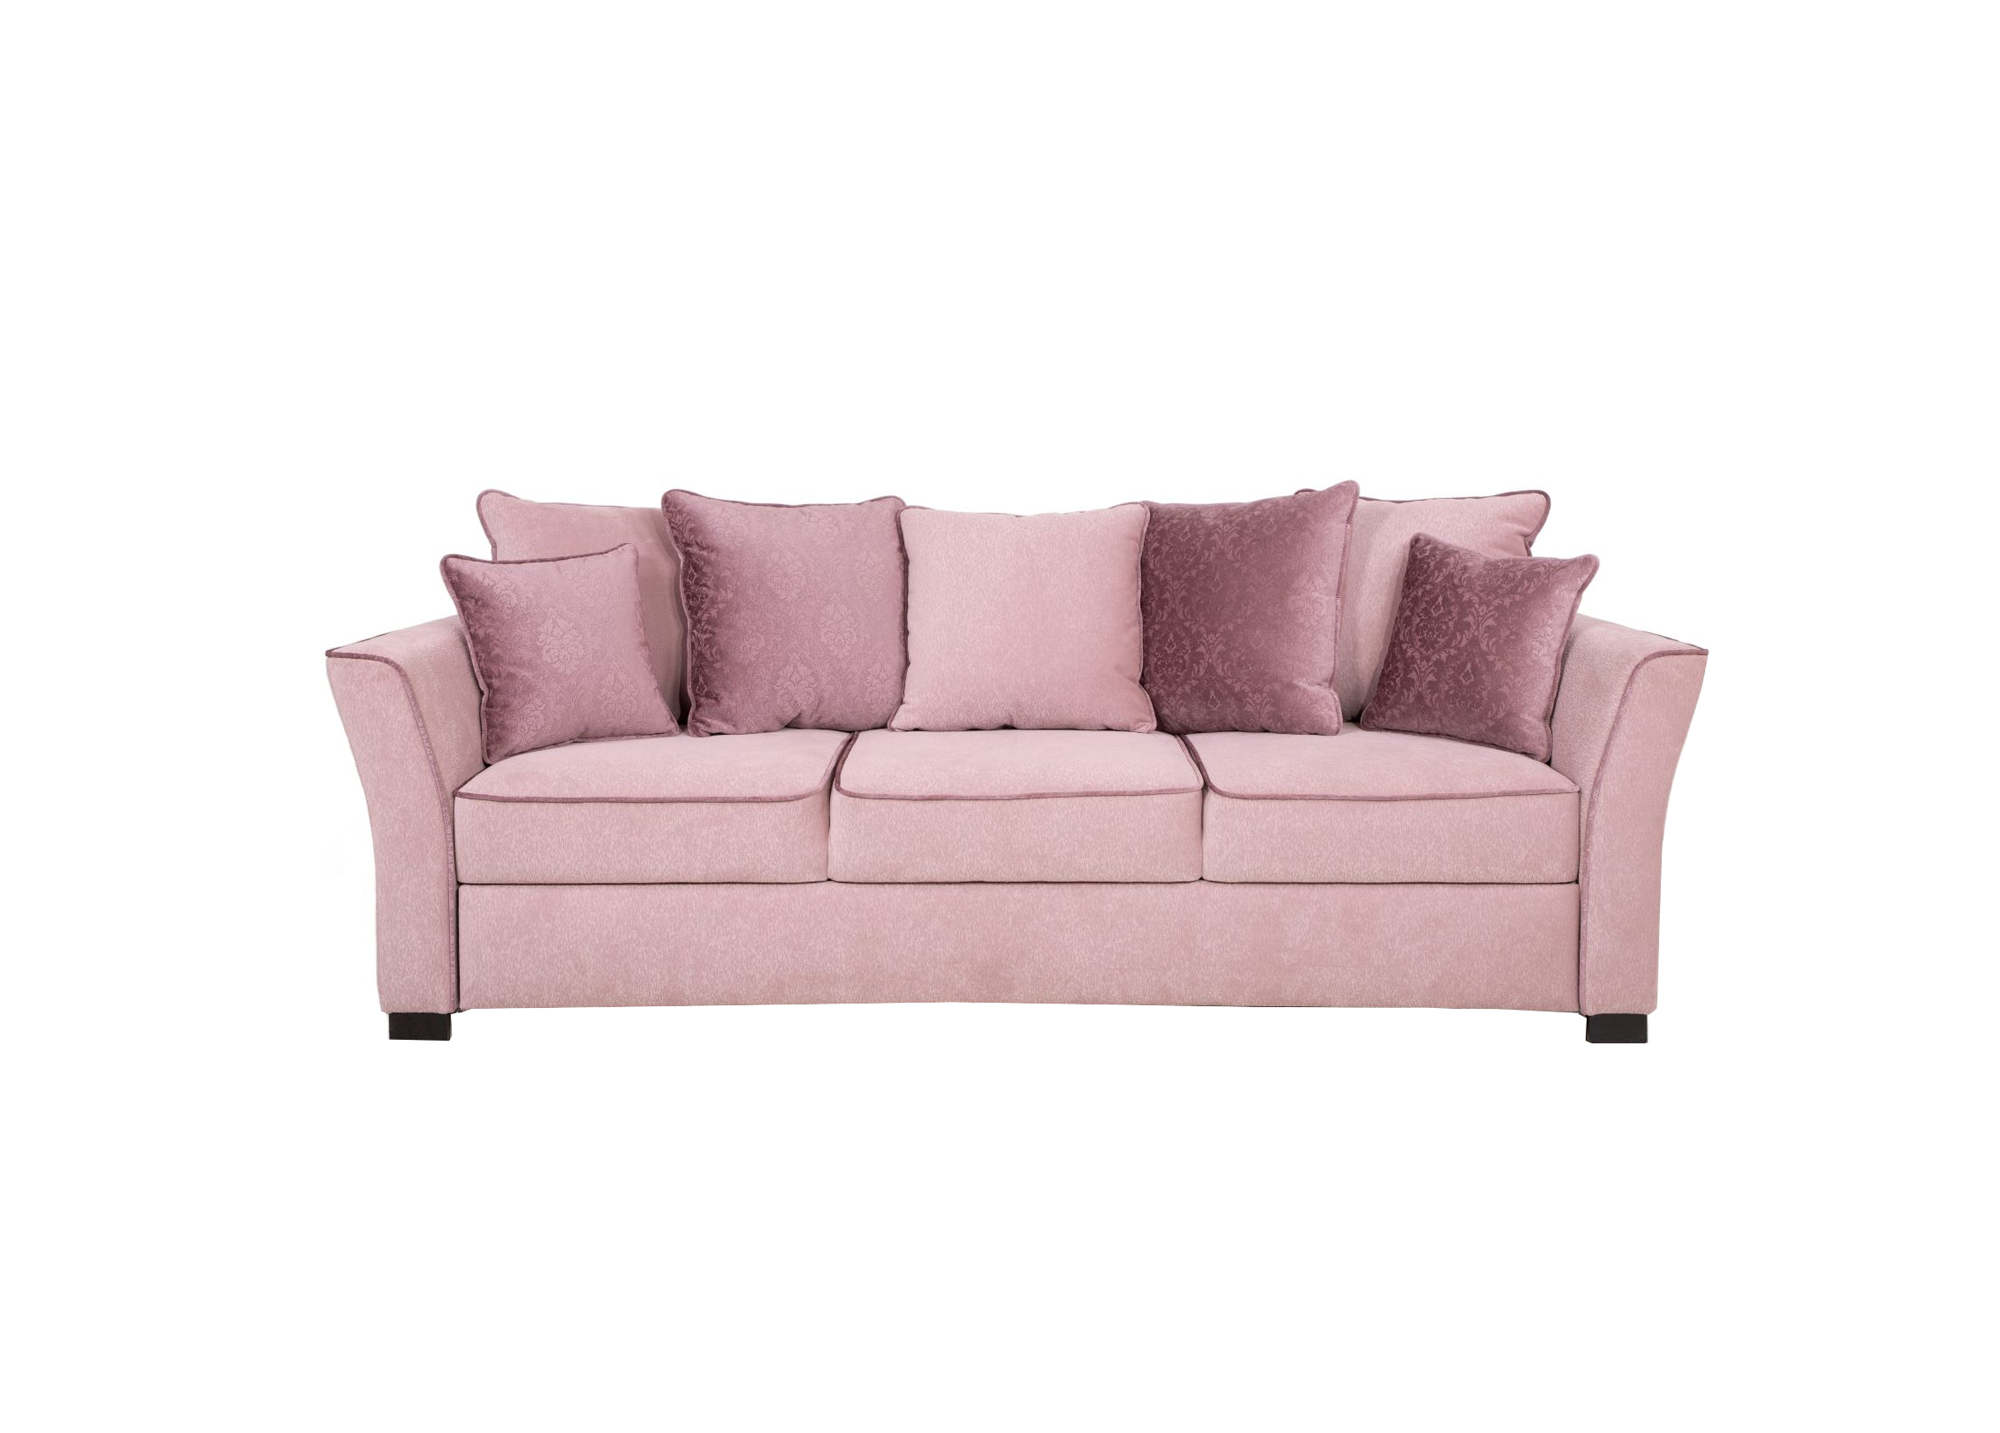 Svetainės baldai | GRAFŲ BALDAI minkštų baldų kolekcija: sofa - lova, fotelis MINT II